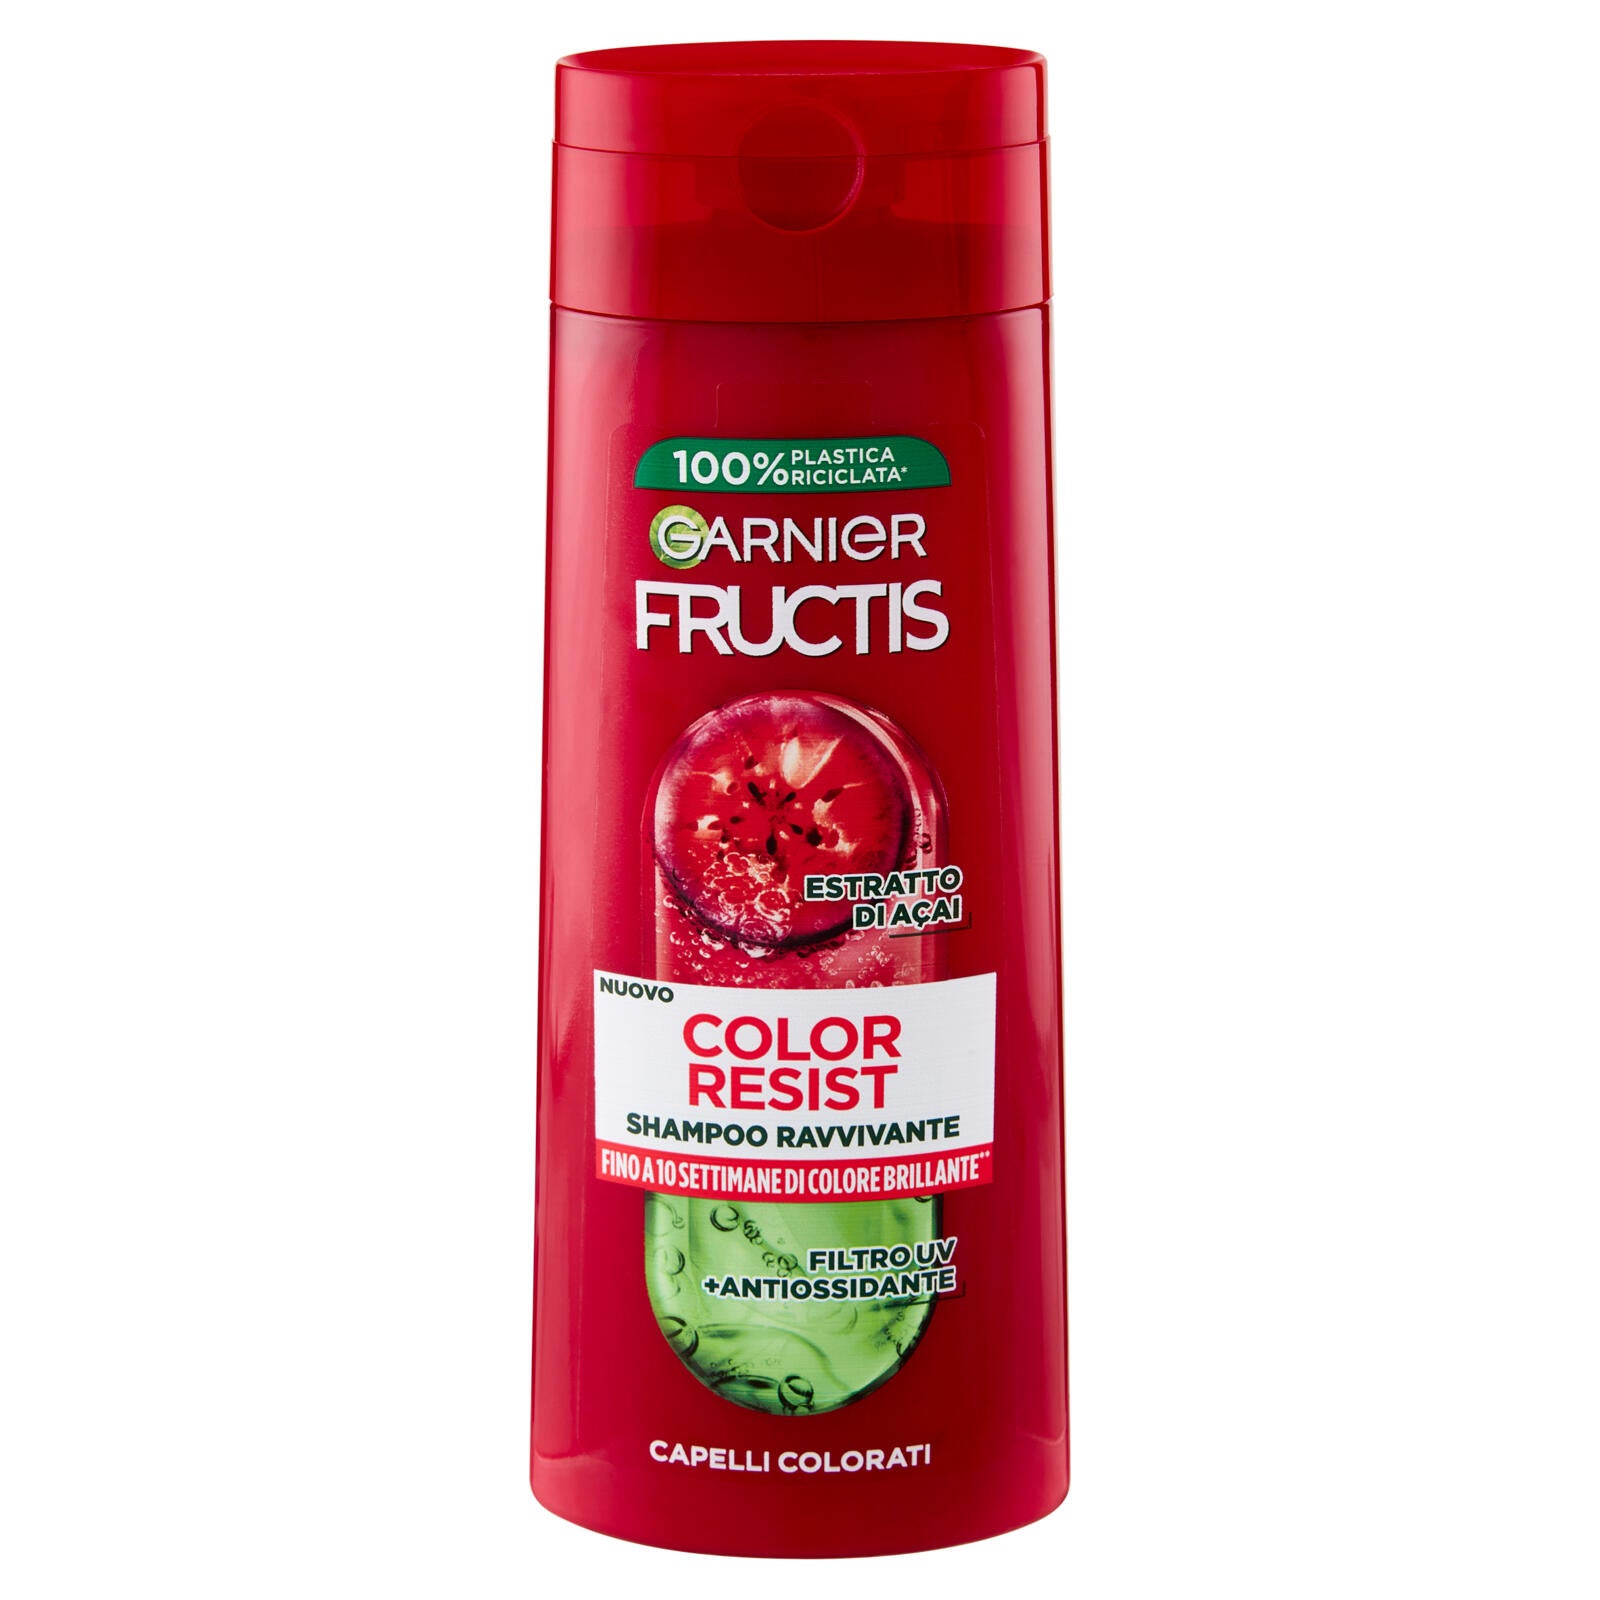 Garnier Fructis Shampoo Color Resist, shampoo ravvivante per capelli colorati 250 ml